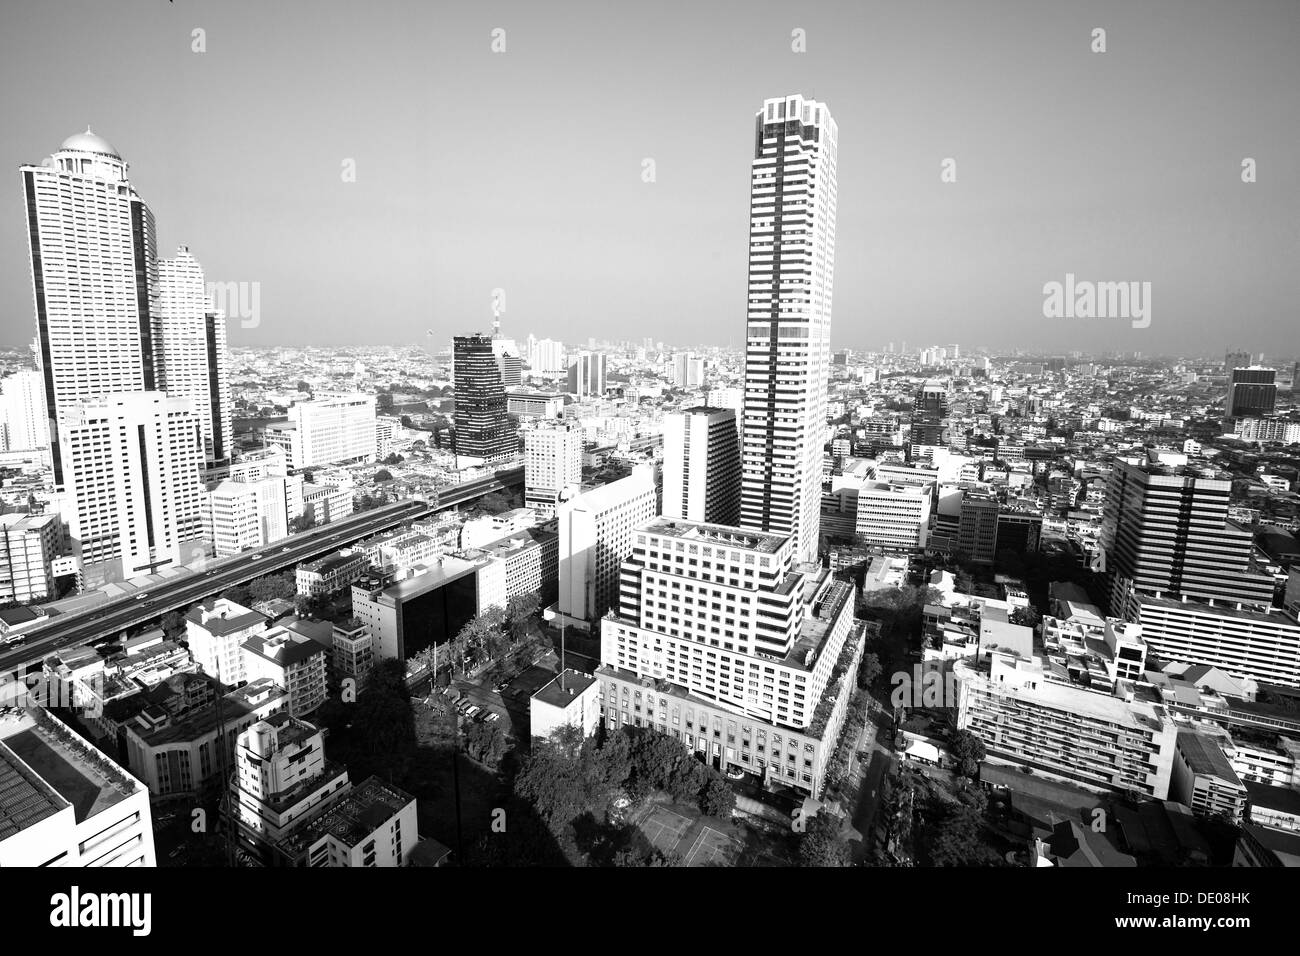 Bird's-eye view of Bangkok, Thailand, black and white photo Stock Photo